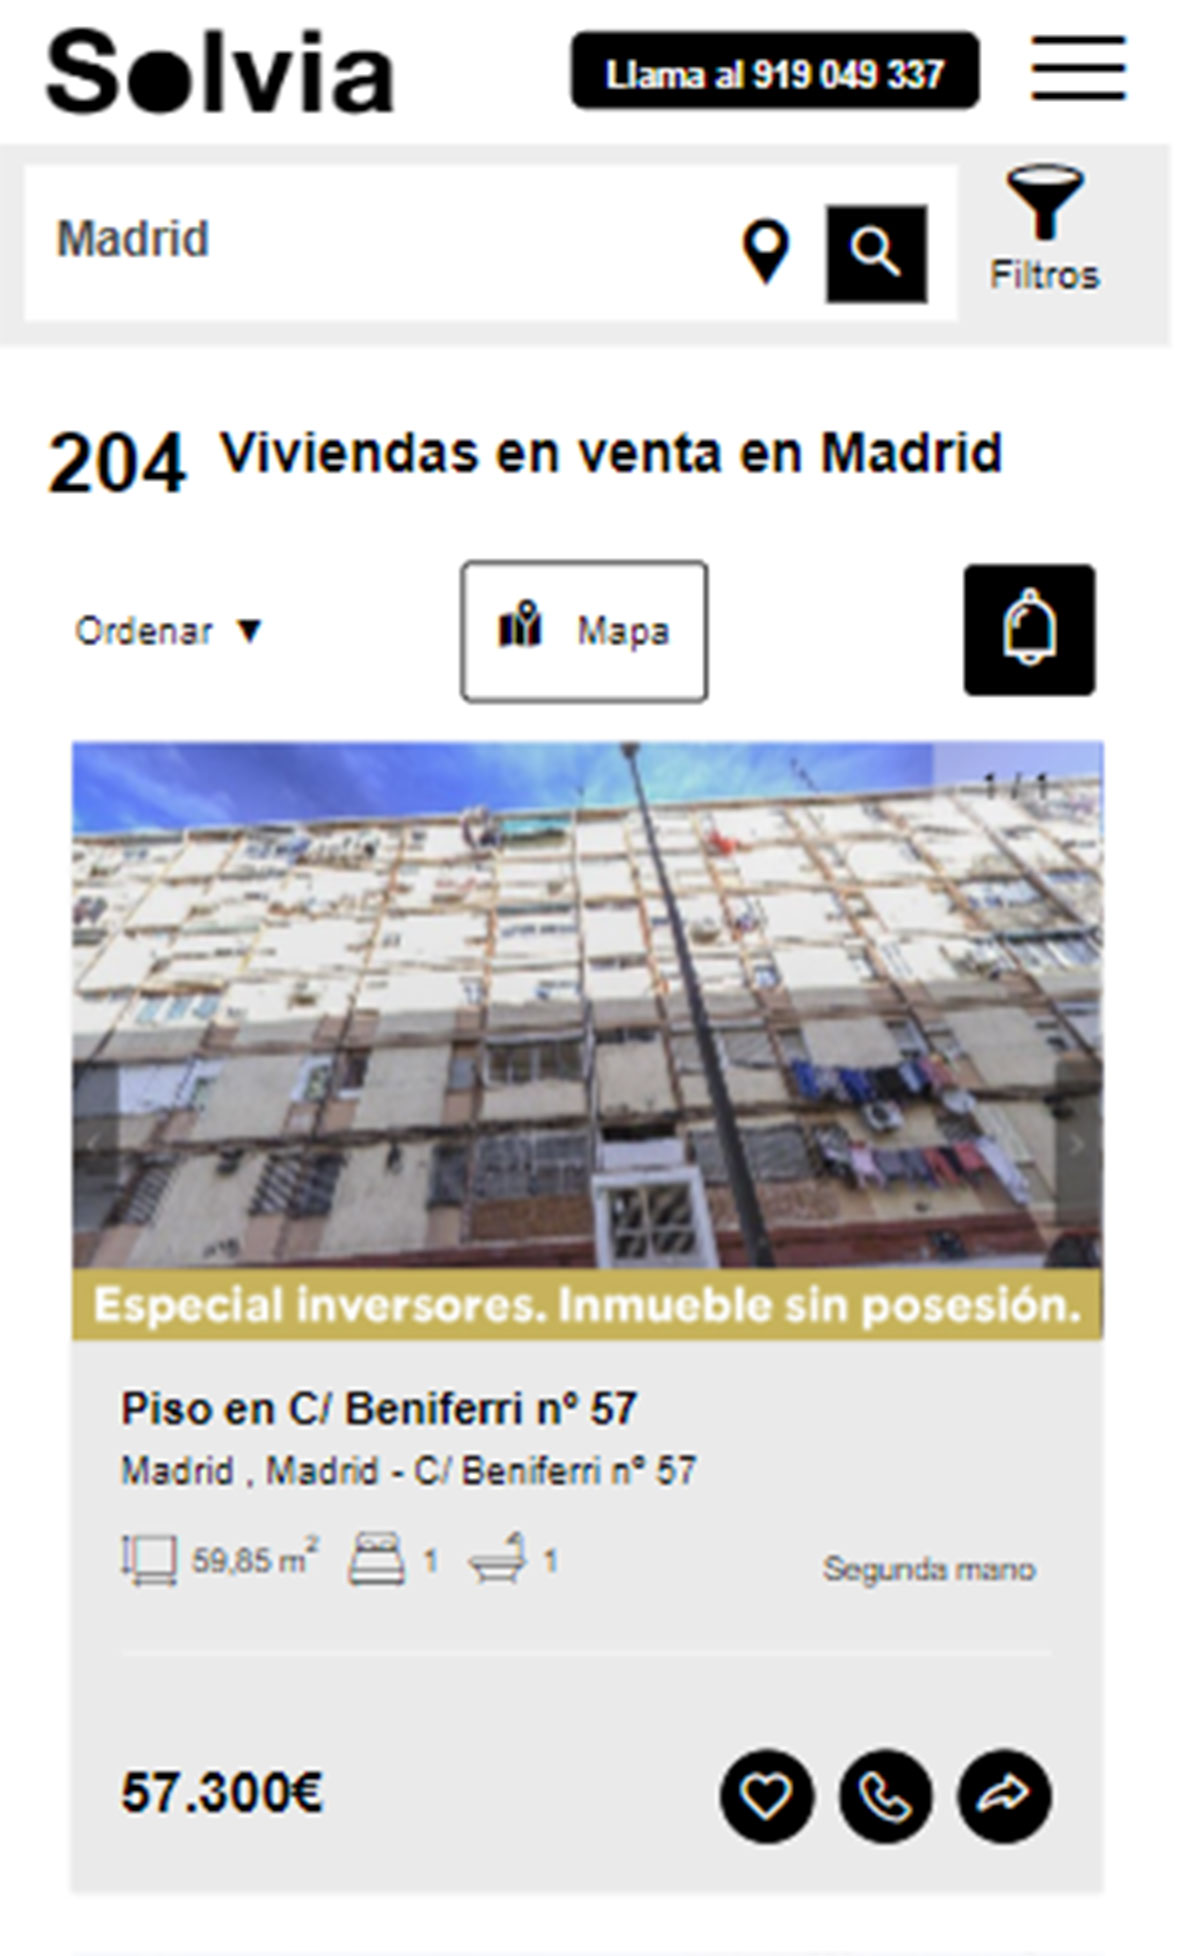 Piso en la ciudad de Madrid por 57.300 euros